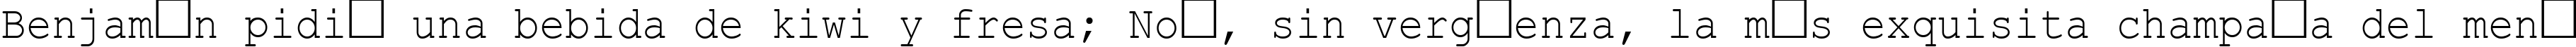 Пример написания шрифтом Courier New Cyr_90n текста на испанском